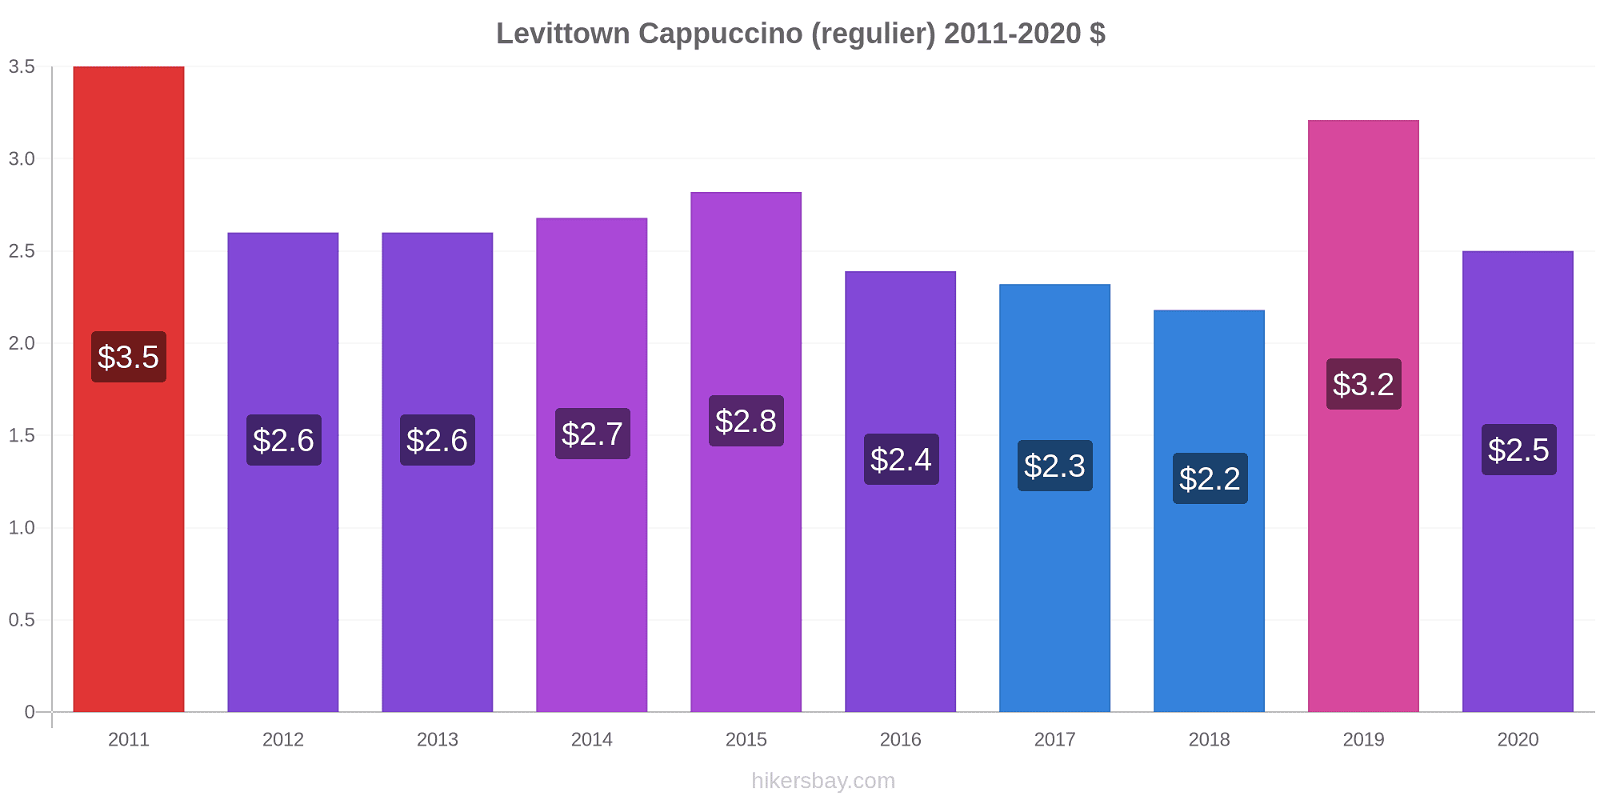 Levittown prijswijzigingen Cappuccino (regelmatige) hikersbay.com